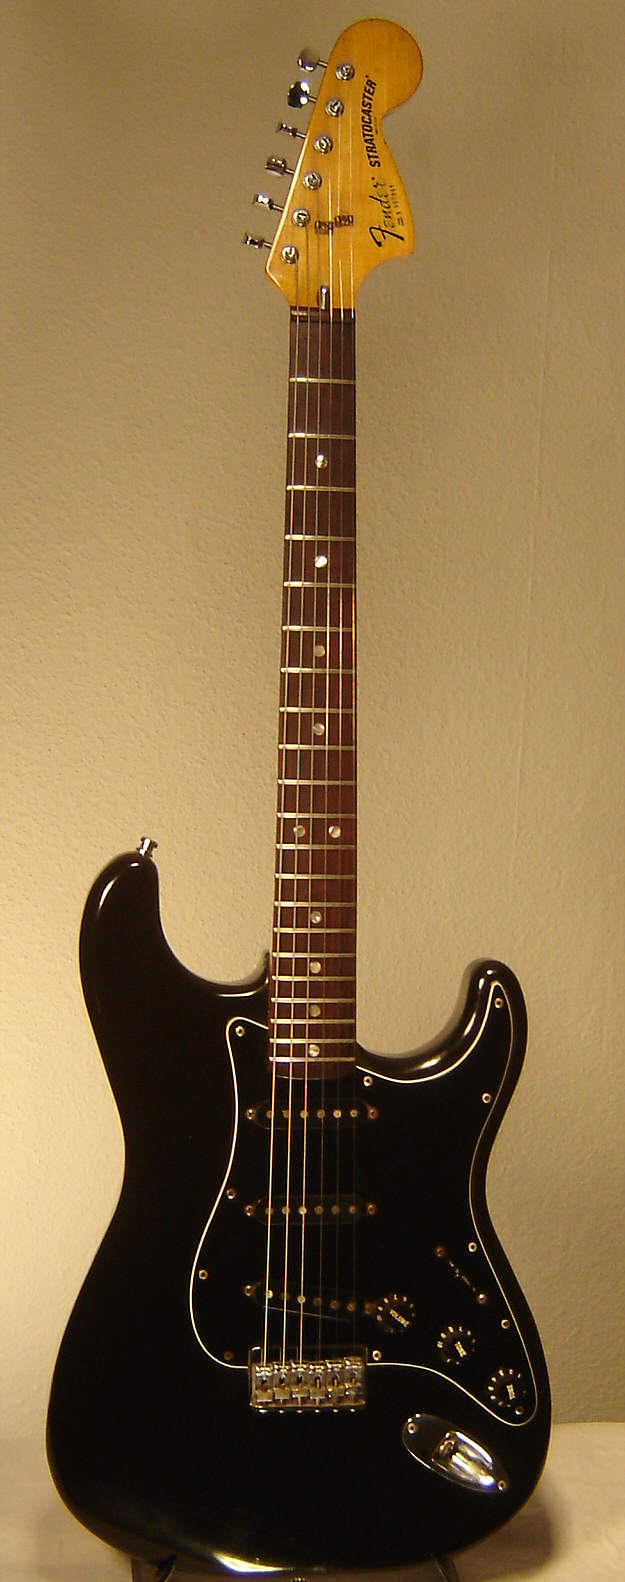 Fender_Stratocaster_1980_black_nontrem.jpg